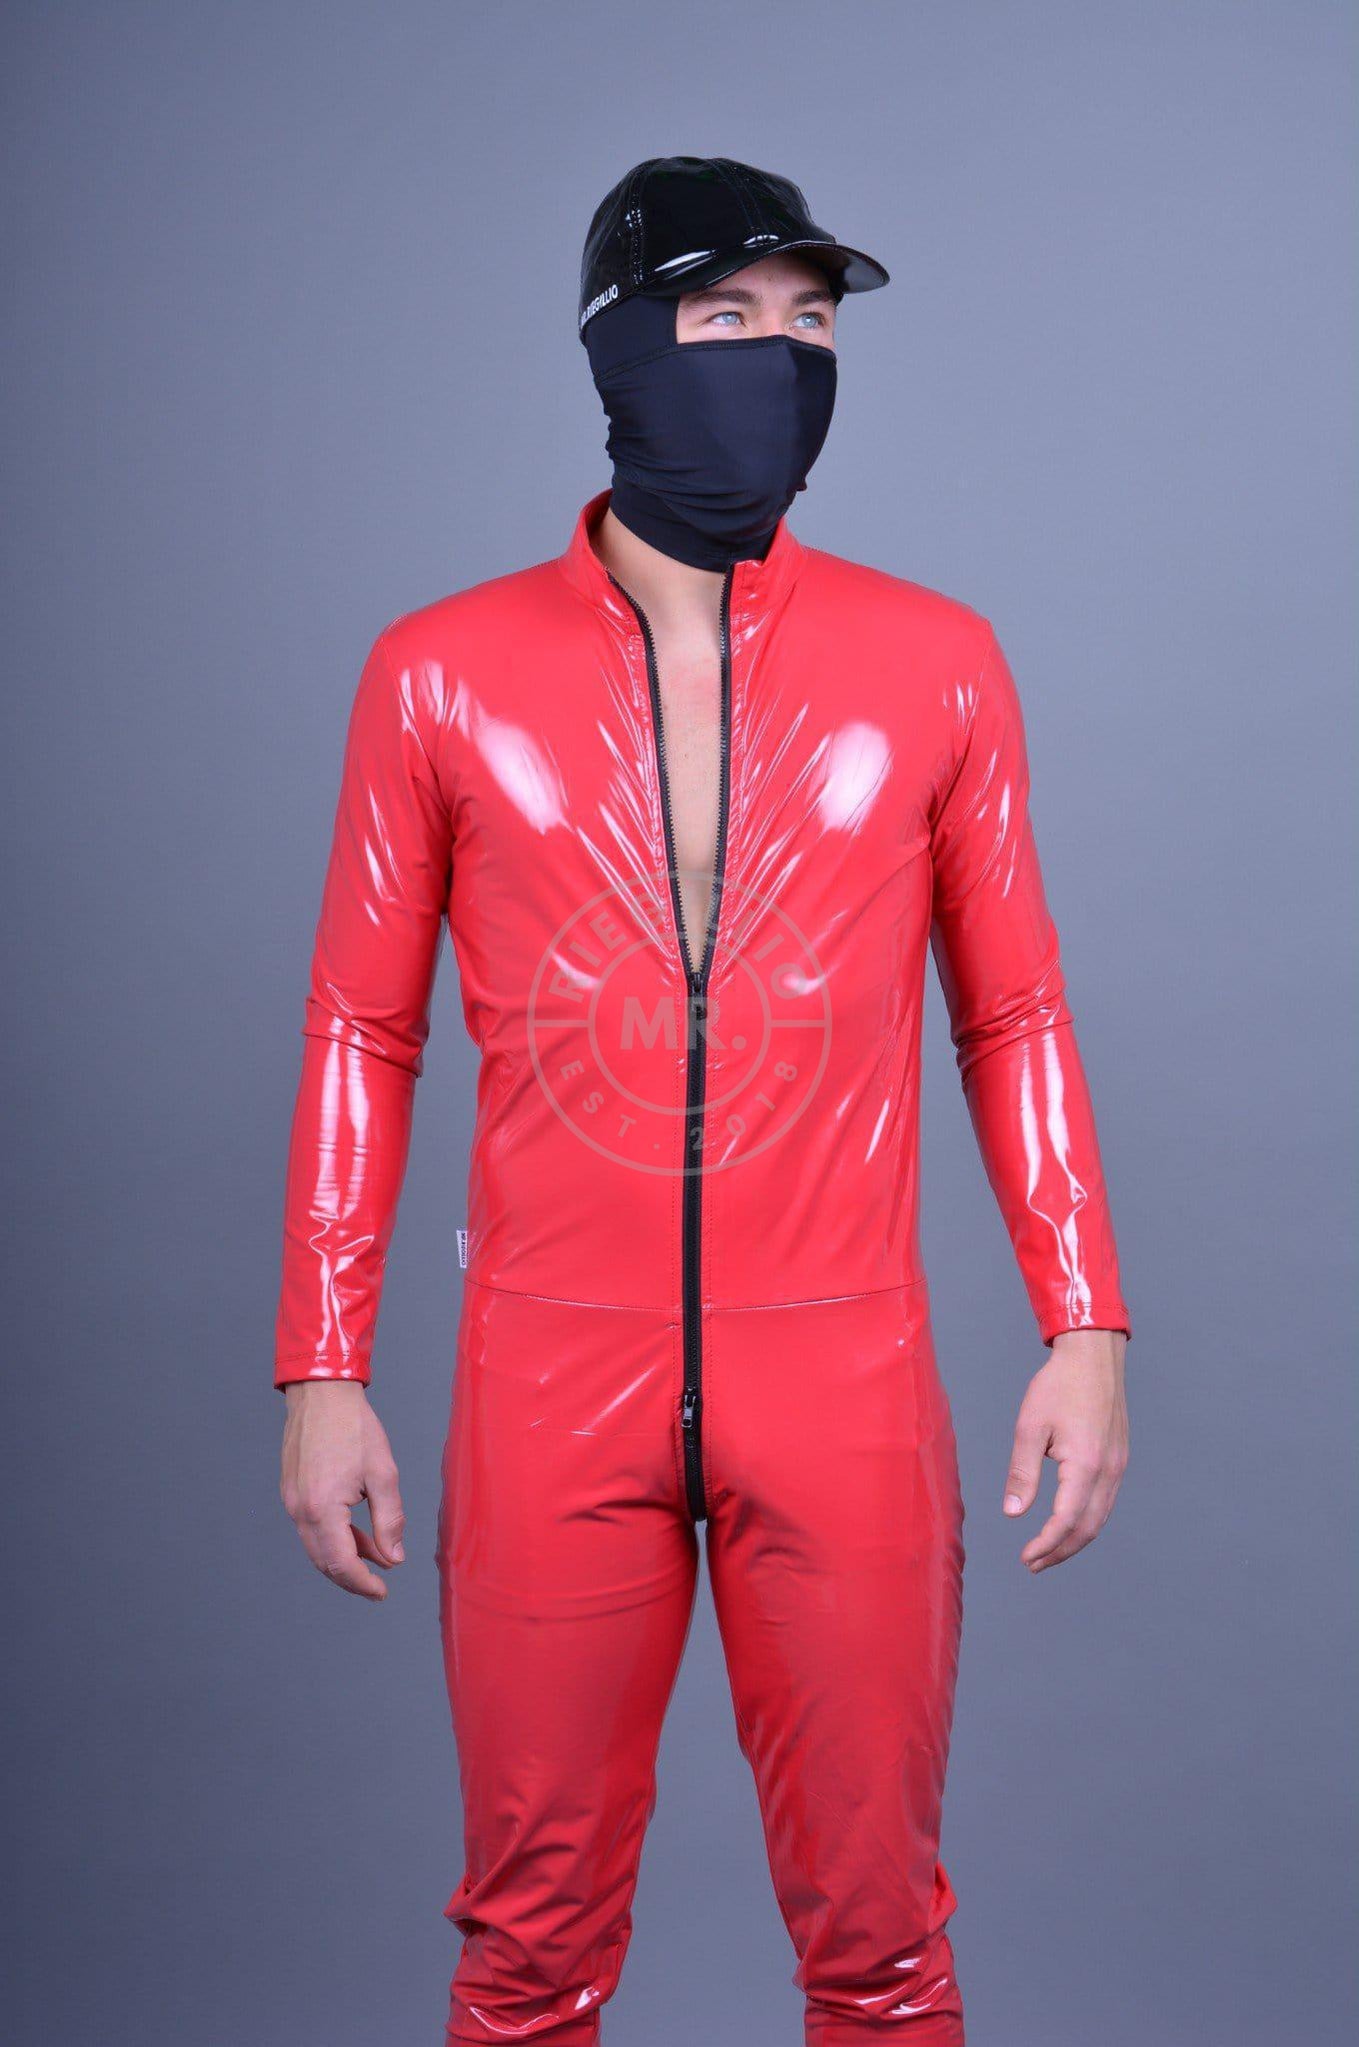 Red PVC Bodysuit at MR. Riegillio